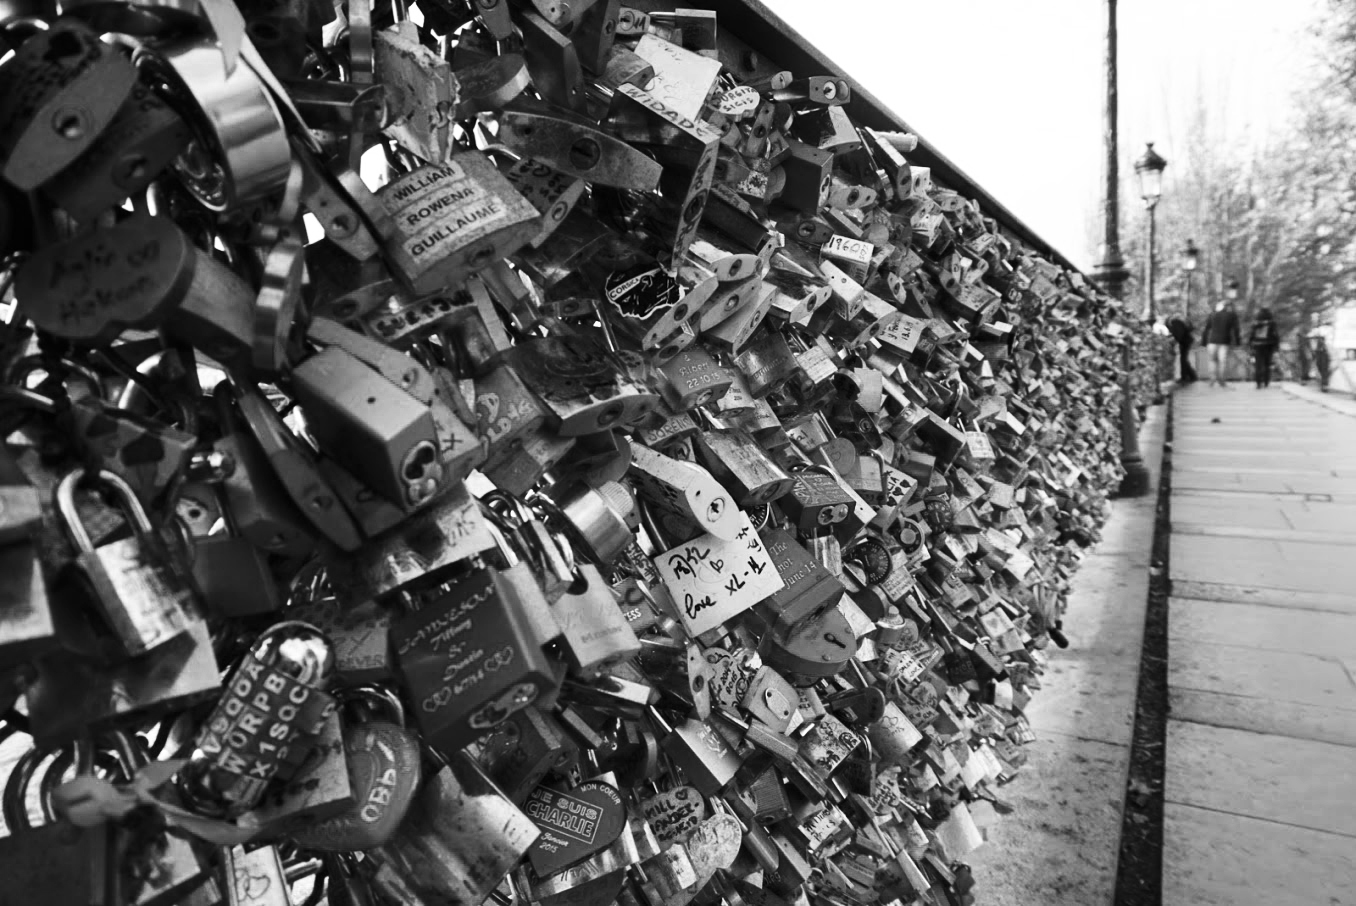 Love Locks Paris